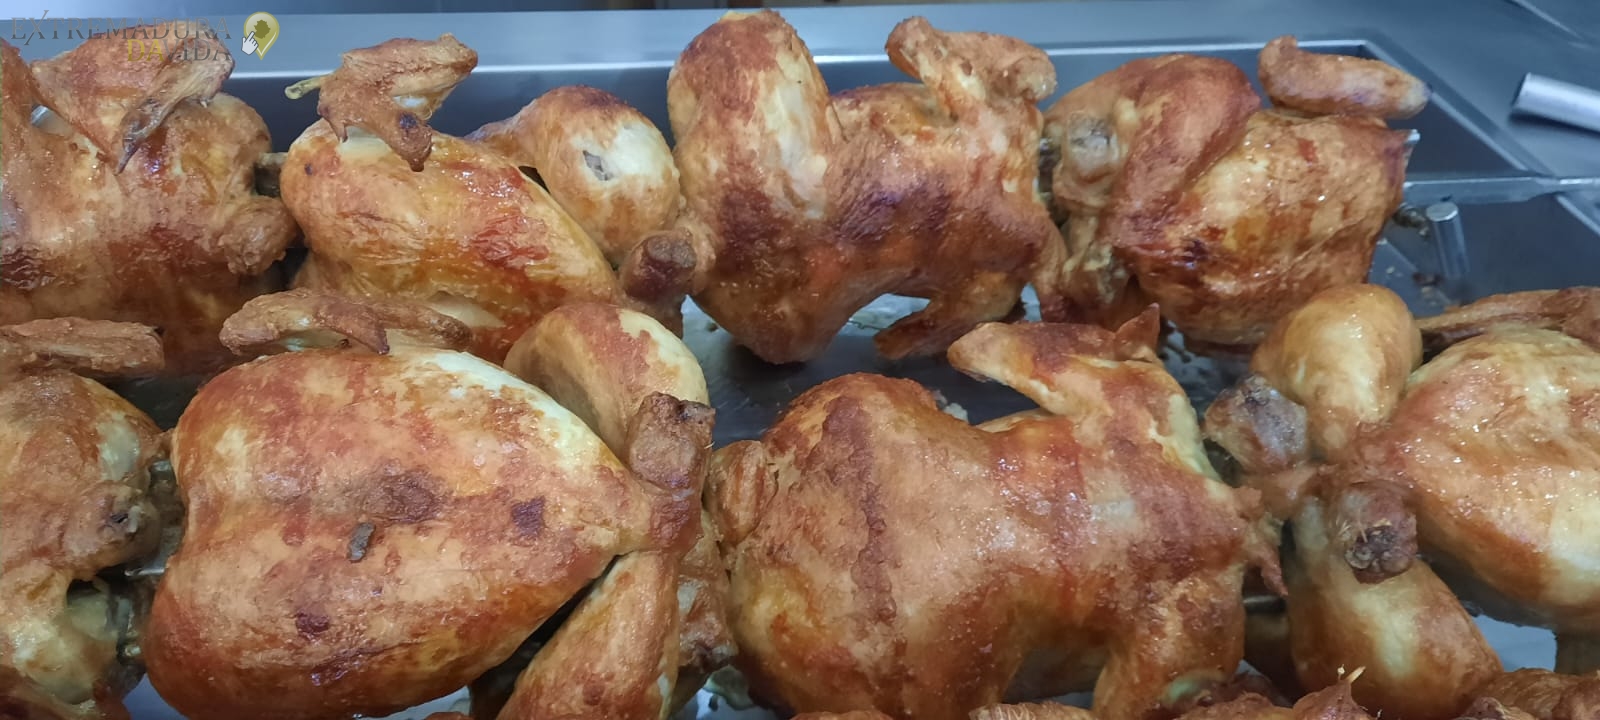 Pollos asados en Plasencia El REy del Pollo Comida a domicilio